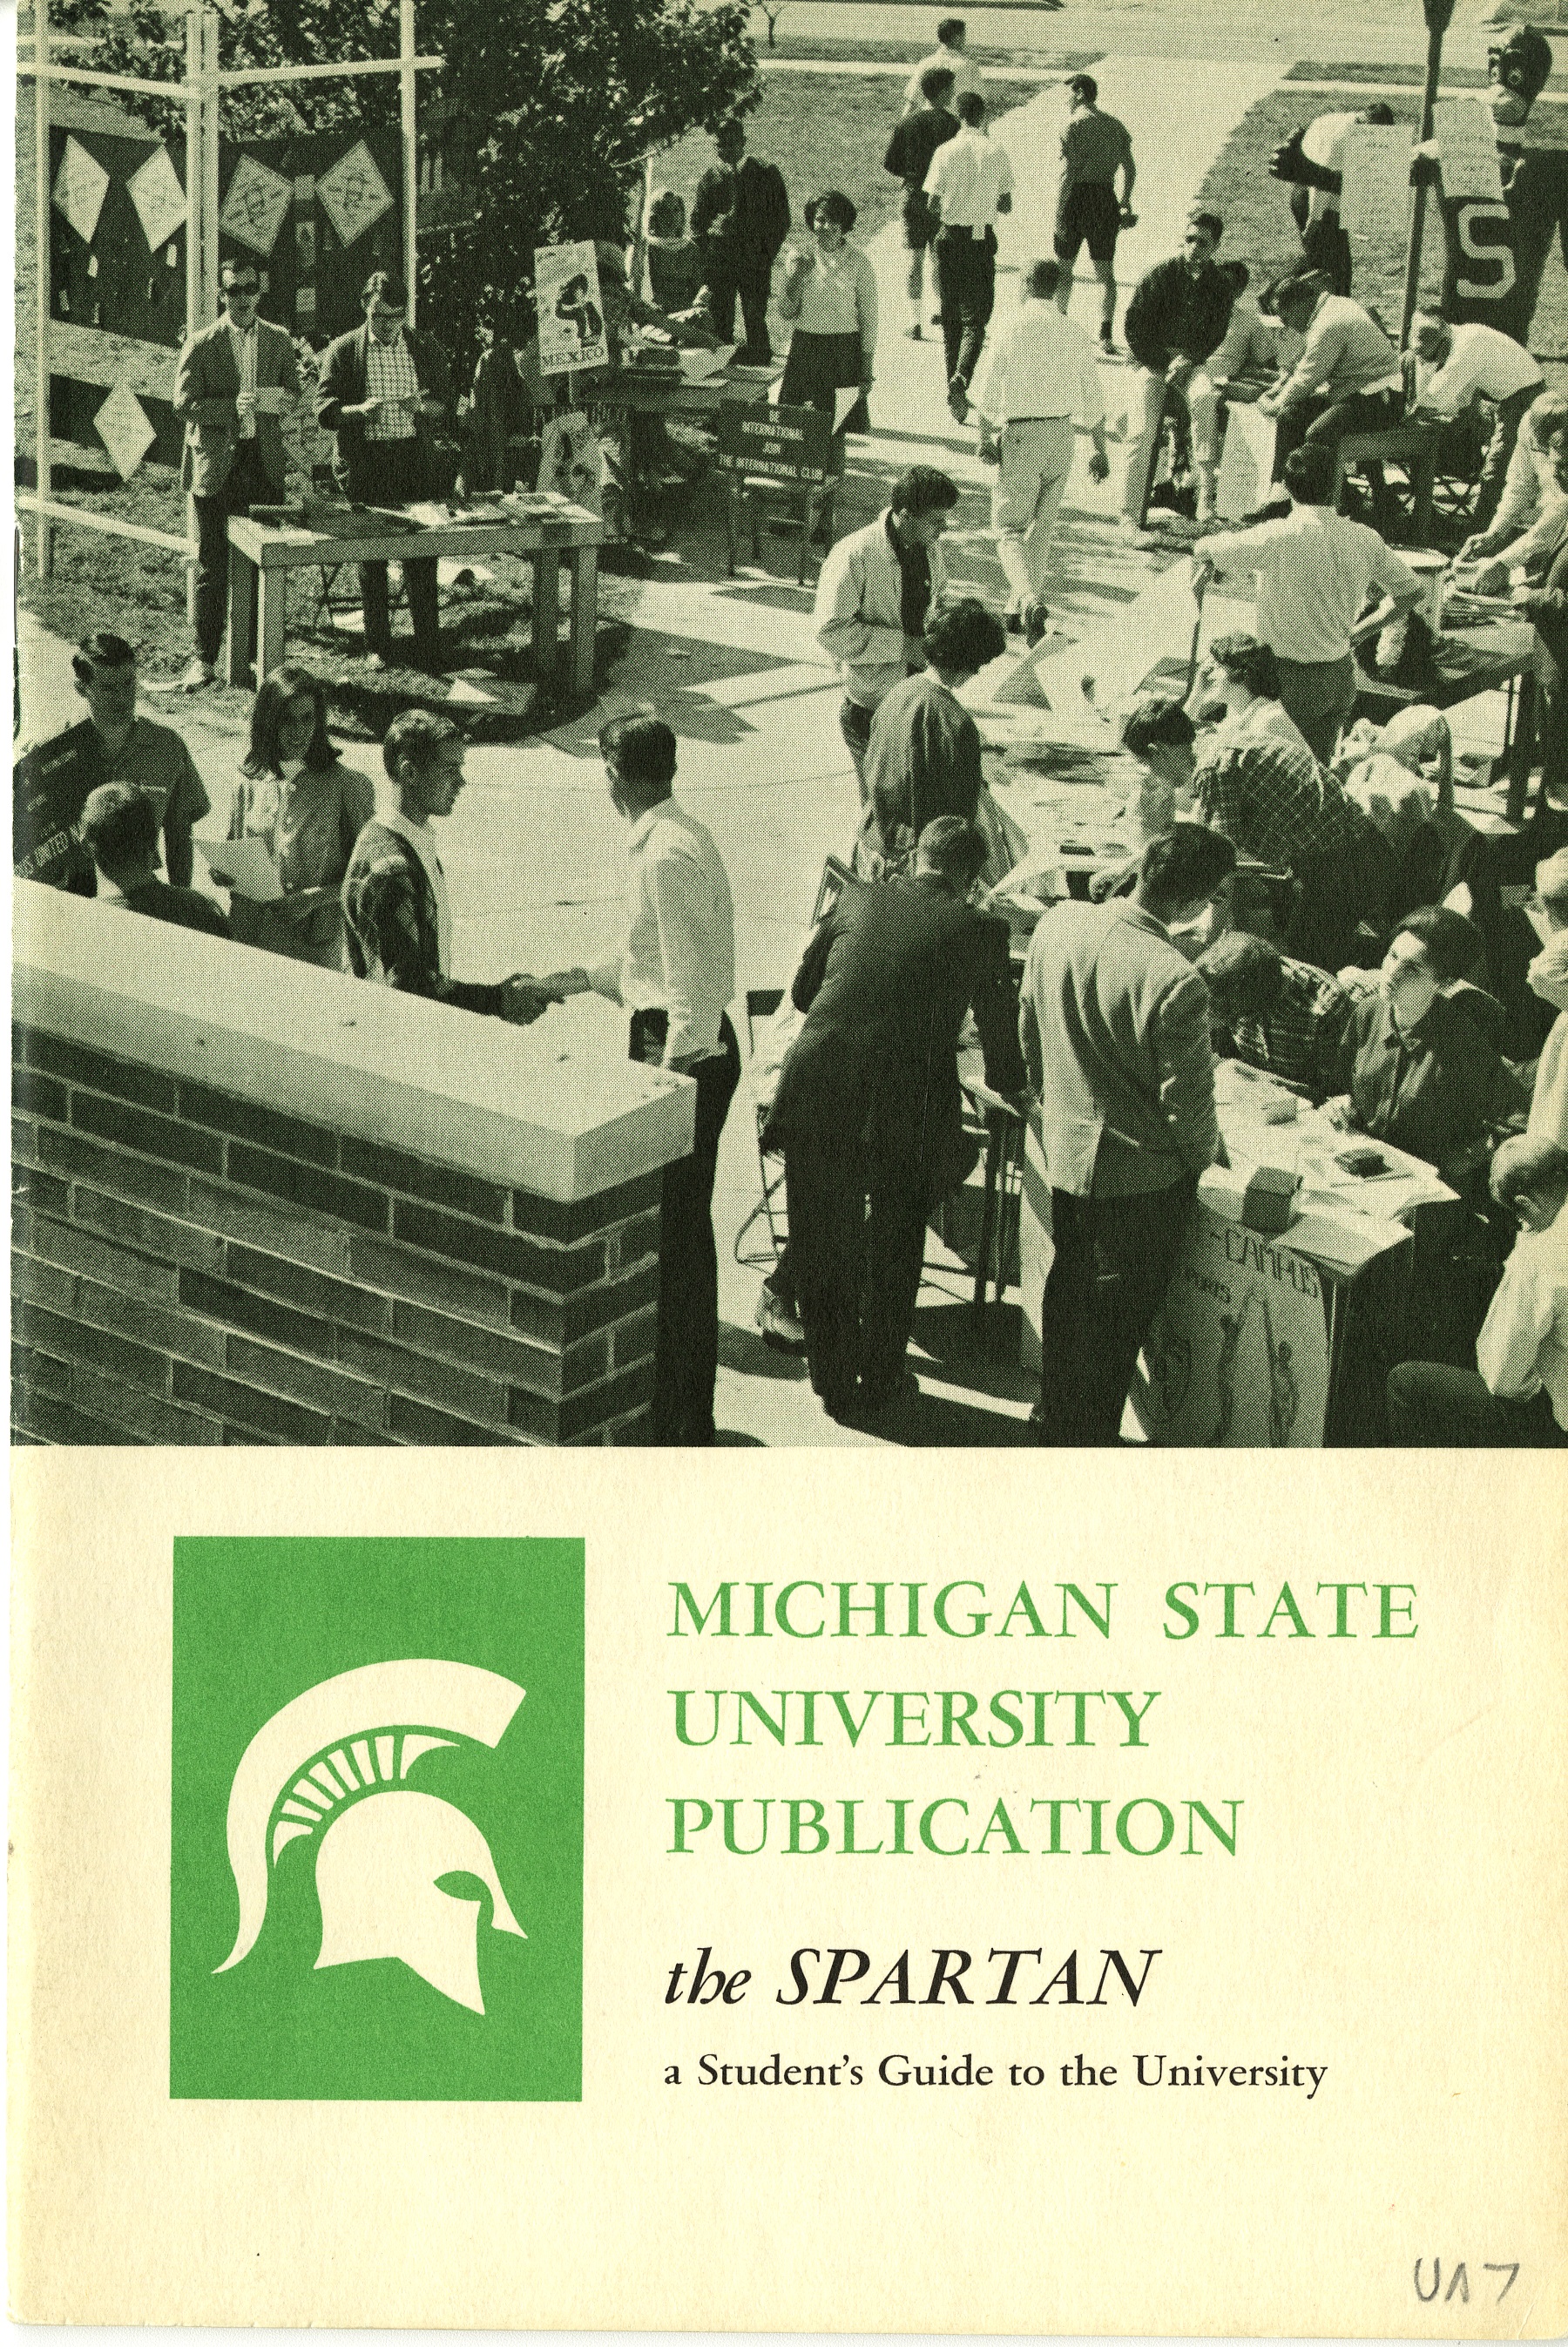 Student Handbook, 1965